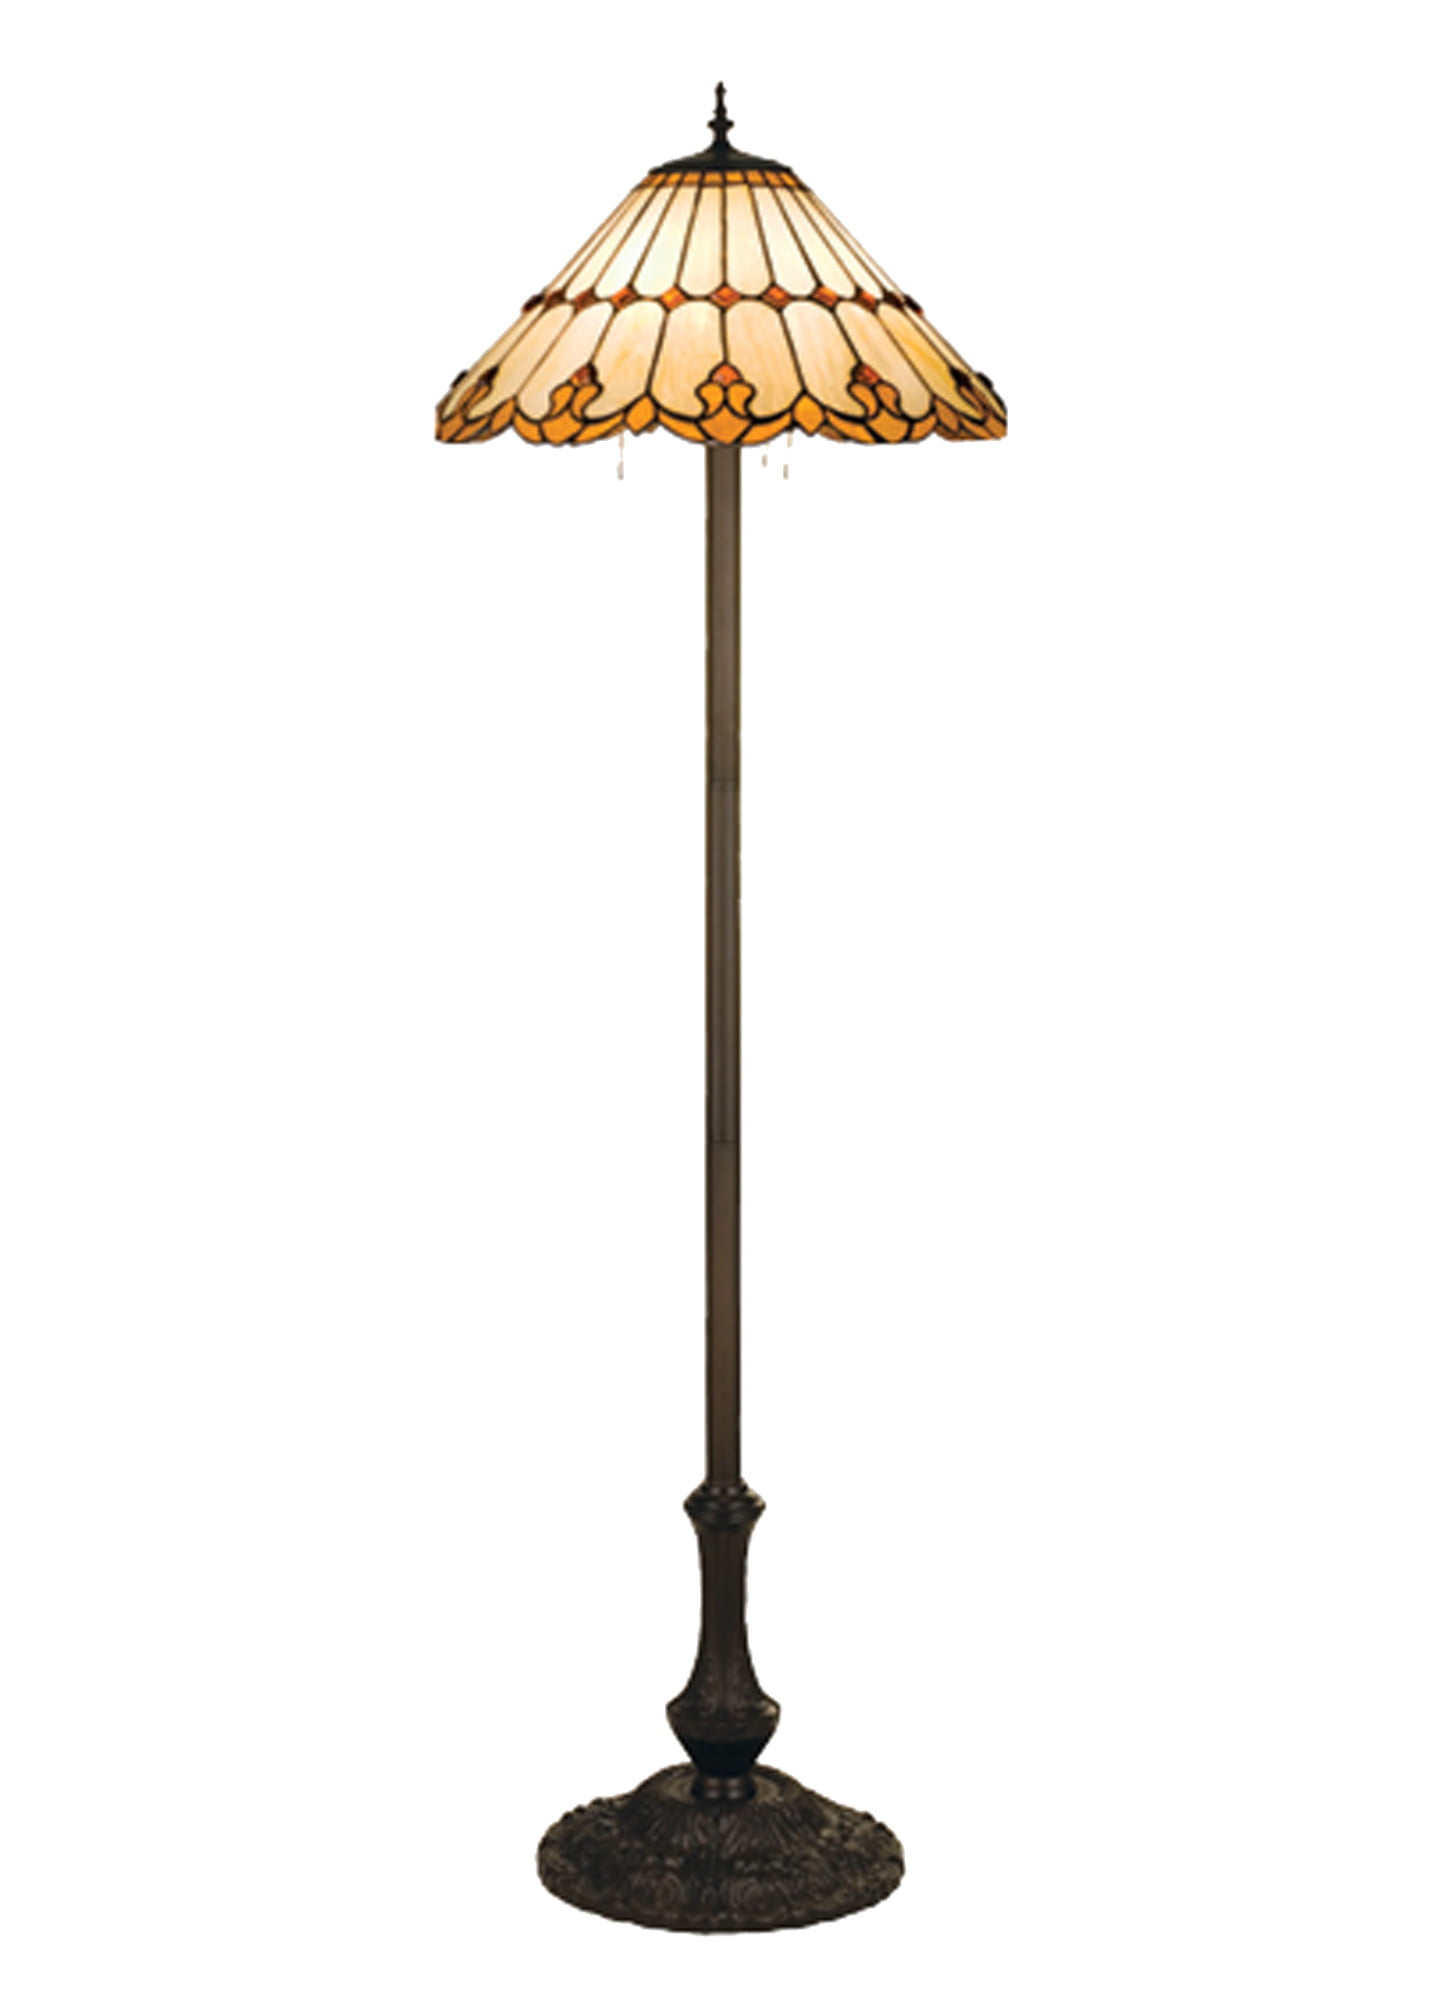 63"H Nouveau Cone Floor Lamp